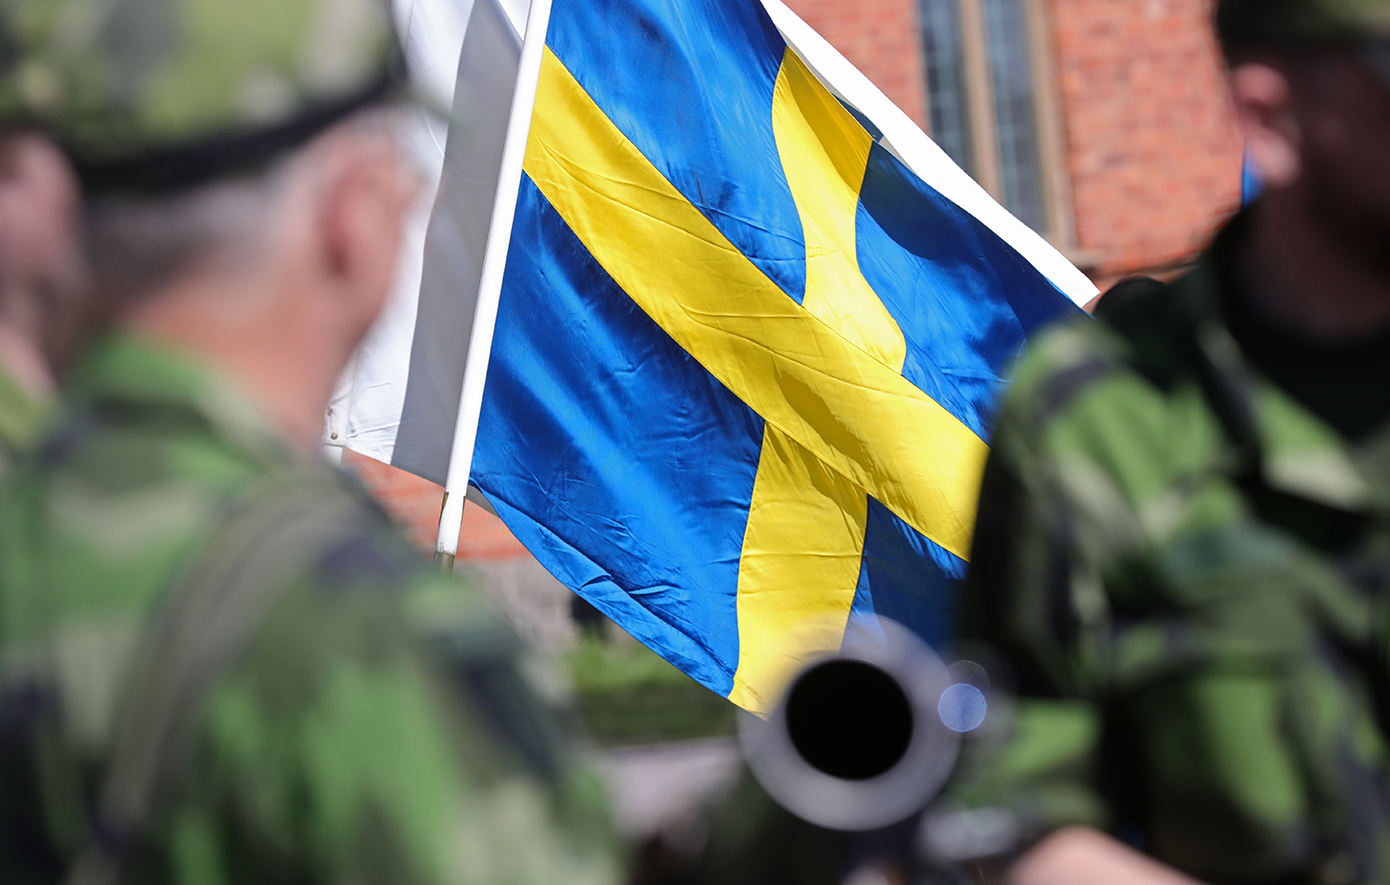 Η Σουηδία δημιουργεί «ελίτ» στρατό, μαθαίνοντας από την εποχή που ήταν αυτοκρατορία